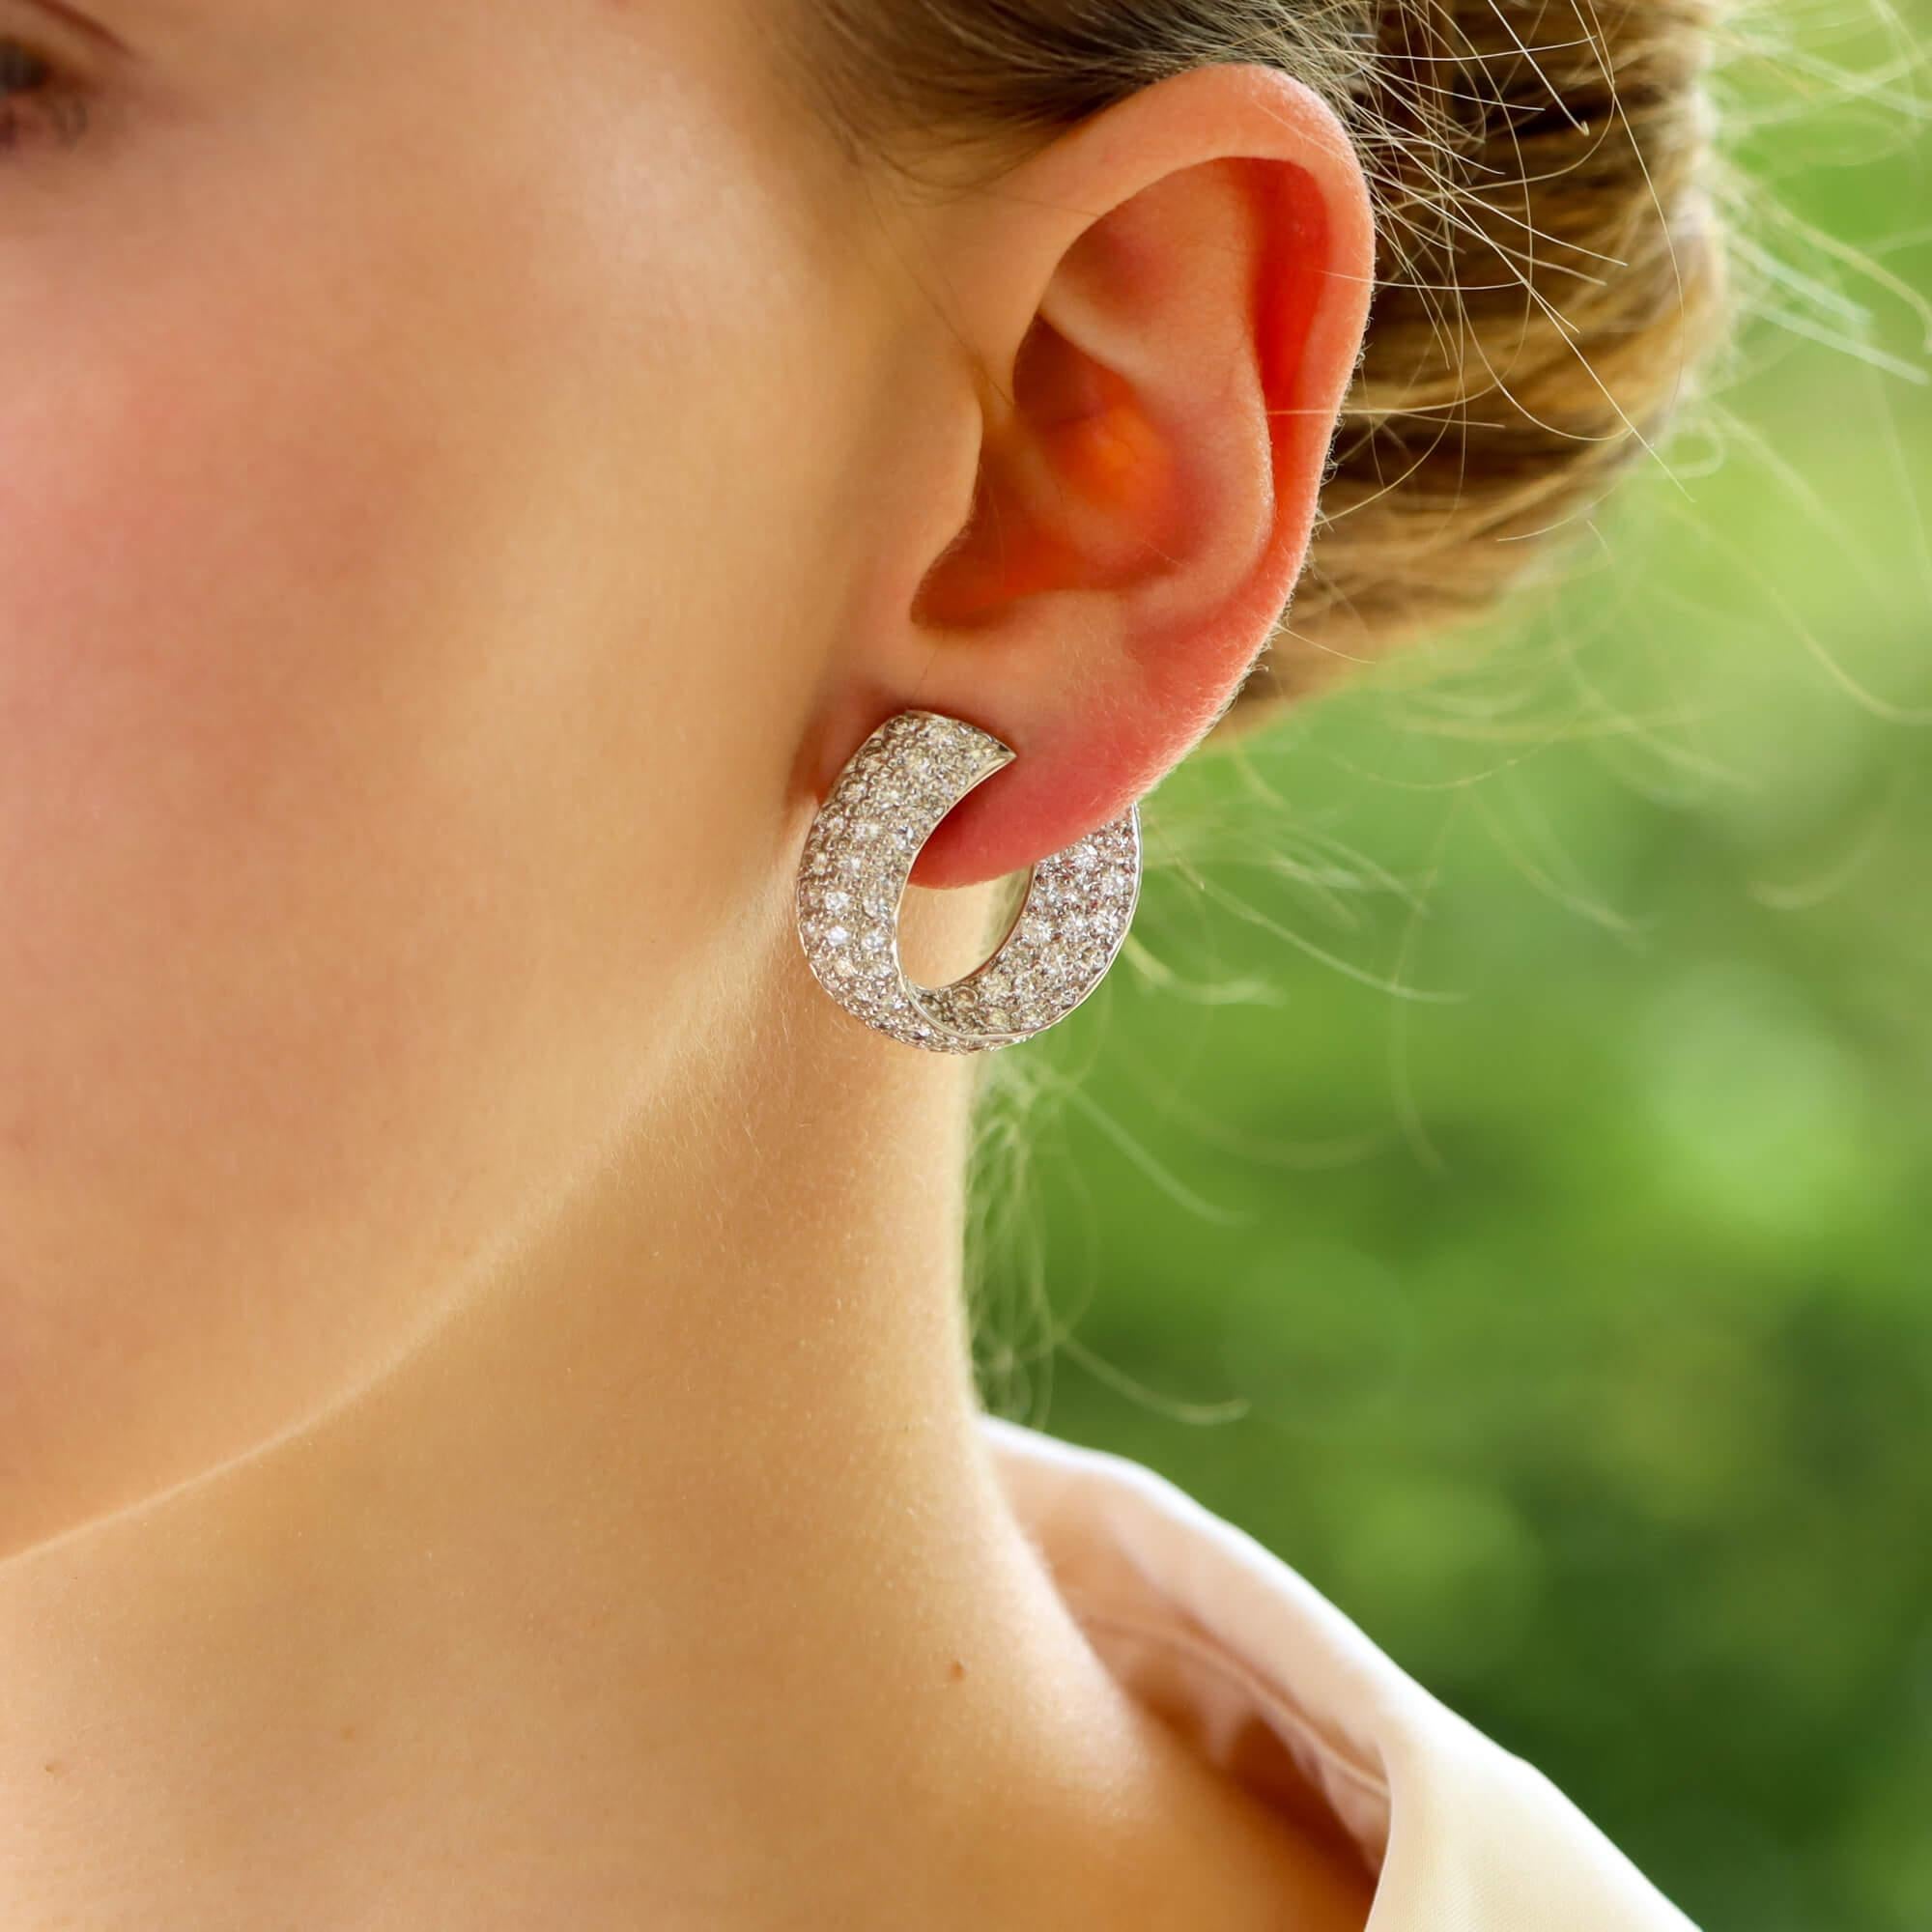  Ein schönes Paar Vintage-Diamant-Ohrringe in 18 Karat Weißgold.

Jeder Ohrring ist als gedrehter Reif gestaltet und durchgehend mit runden Diamanten im Brillantschliff besetzt. Die Reifchen sind so gestaltet, dass sie schräg am Ohr sitzen, damit